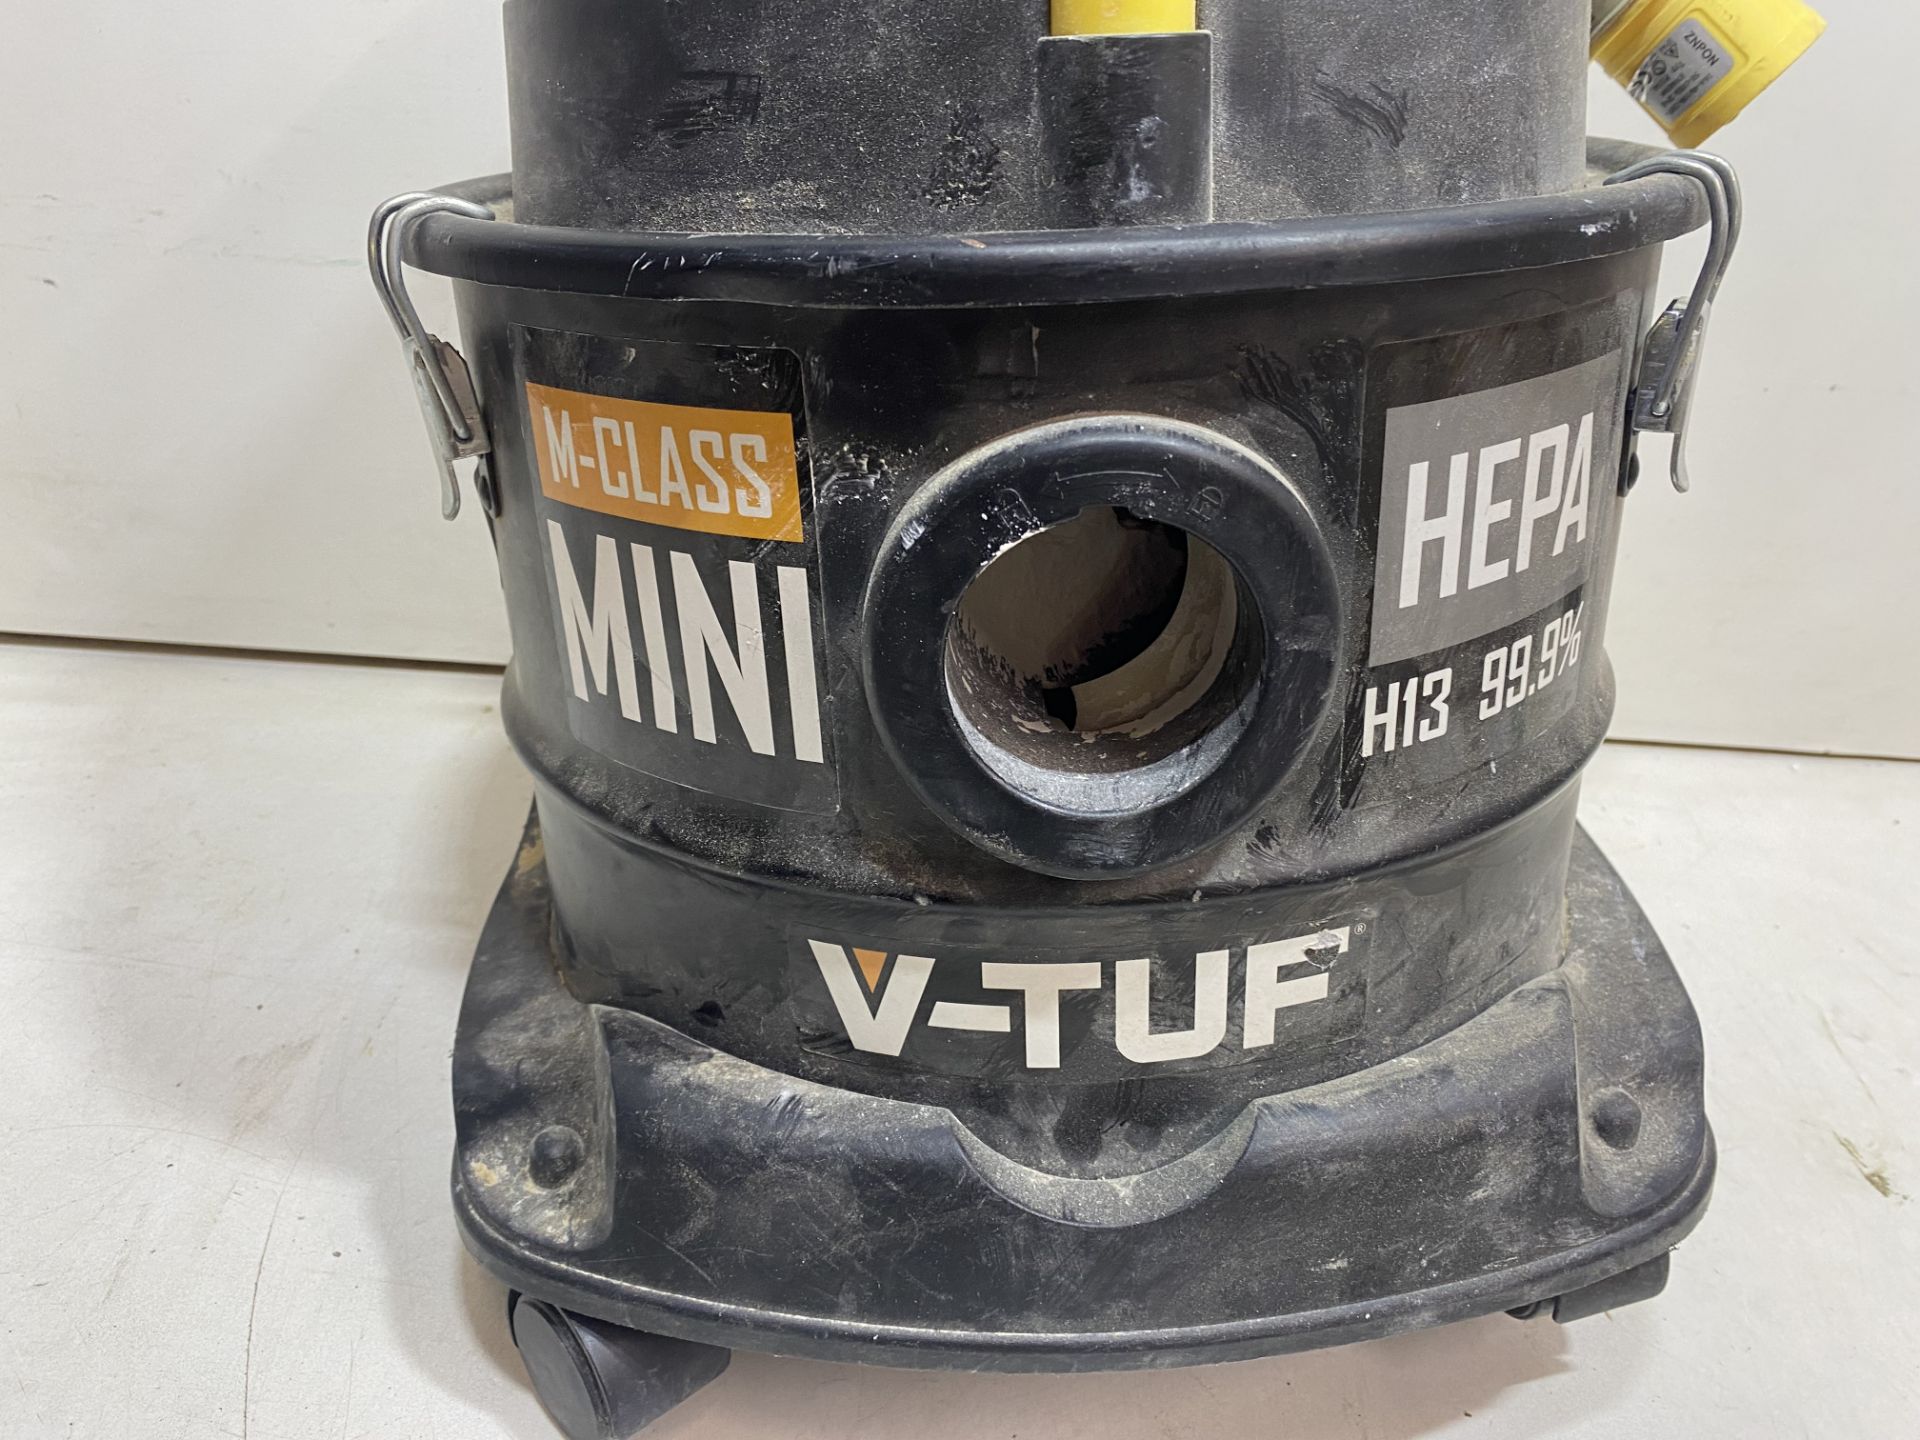 V-TUF VTM1110 240v M-Class Mini Dust Extractor *Missing Wheel* - Image 2 of 7